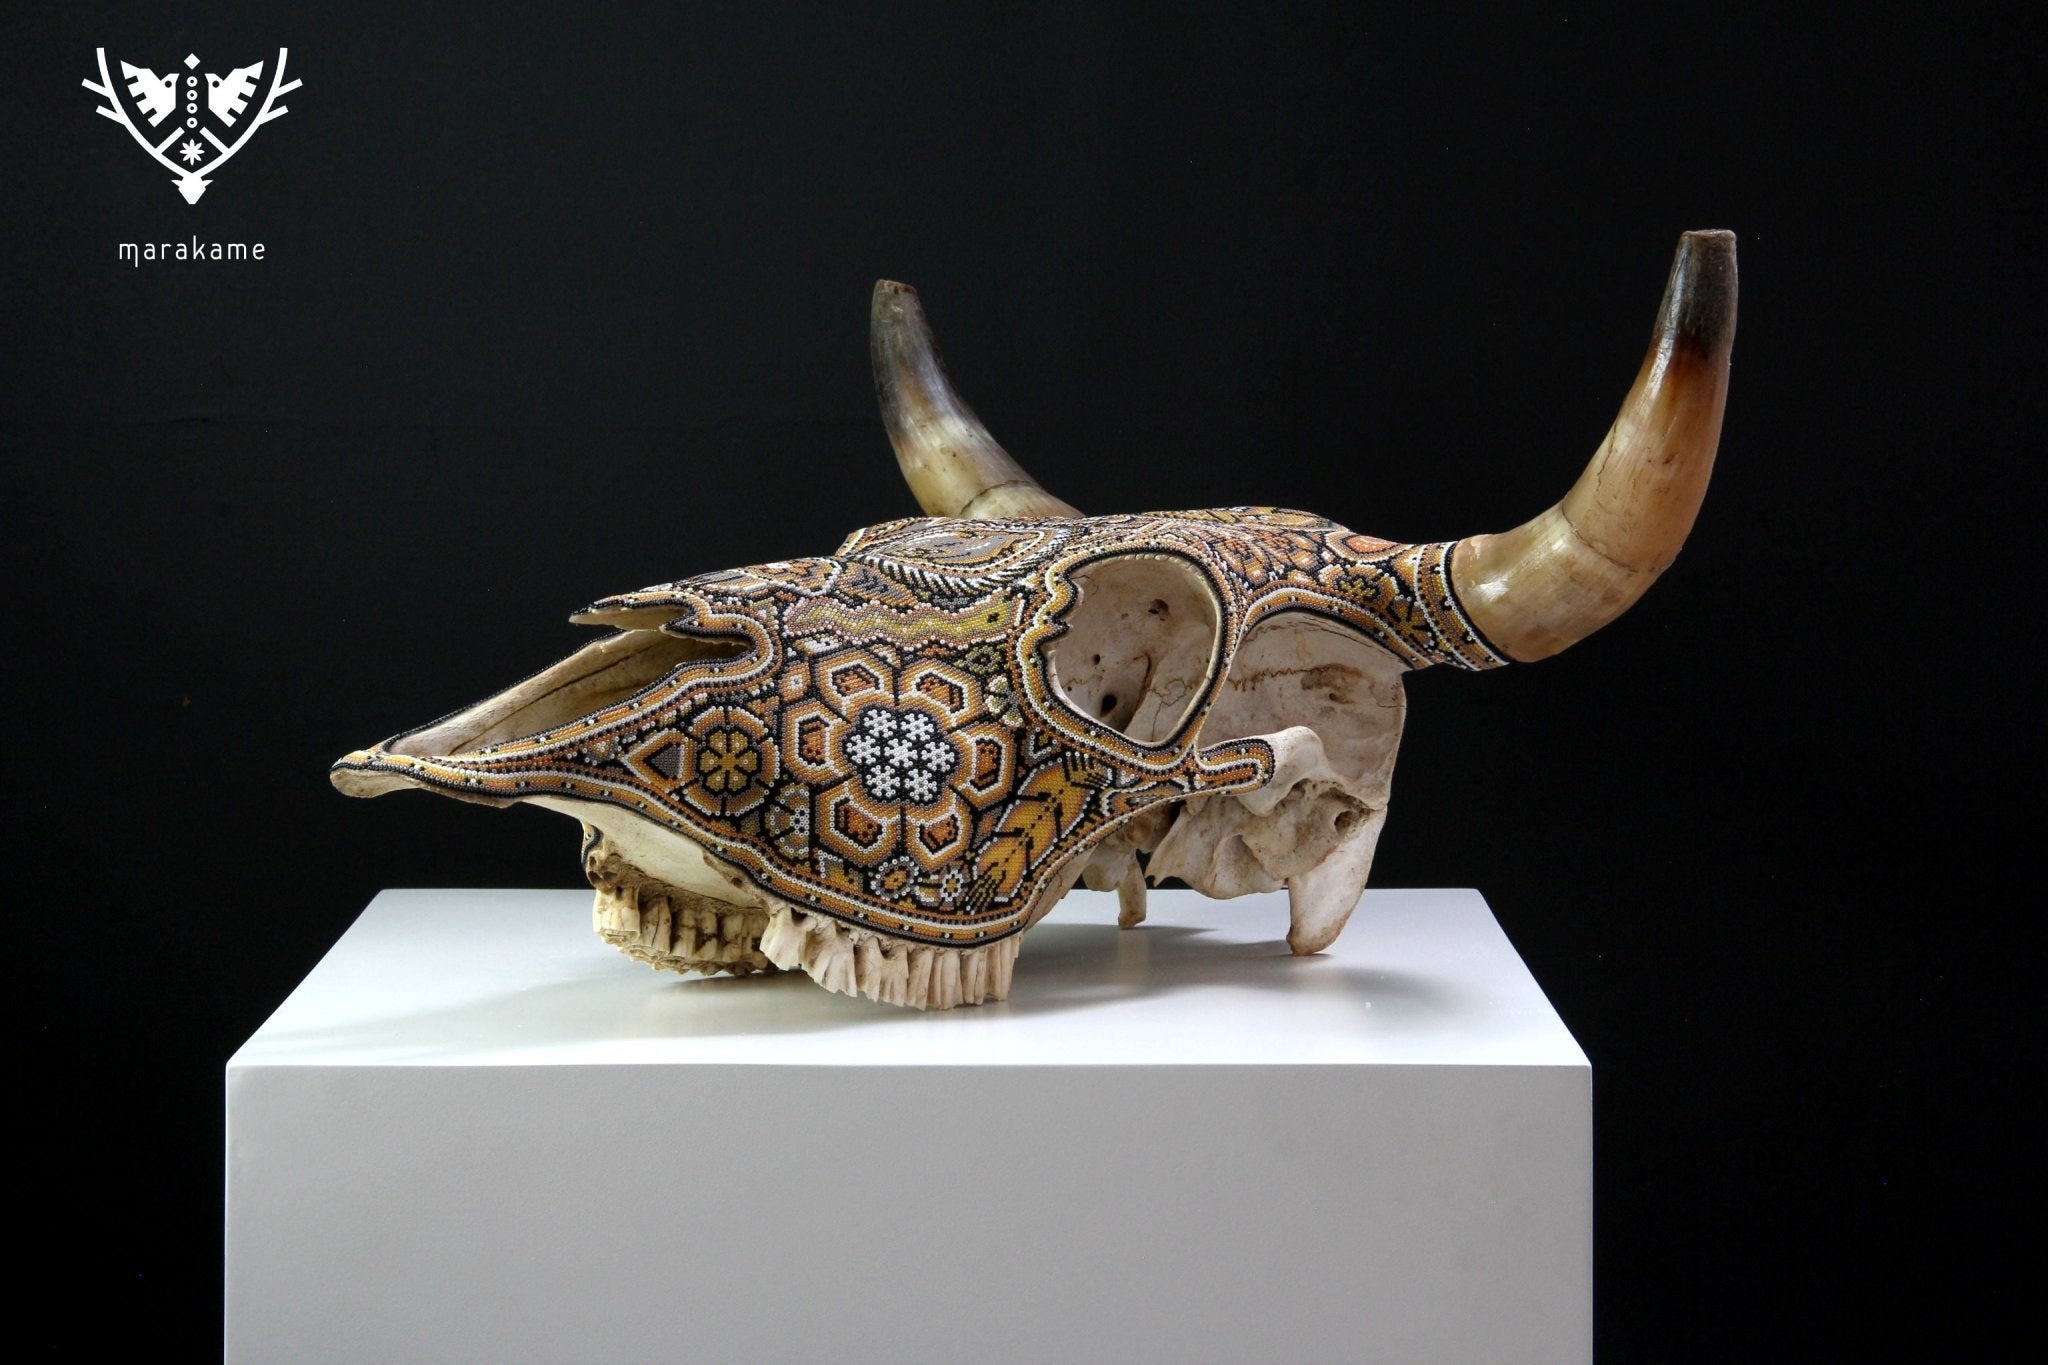 牛の頭蓋骨のウイチョルアート - カウユマリー - ウイチョルアート - マラカメ